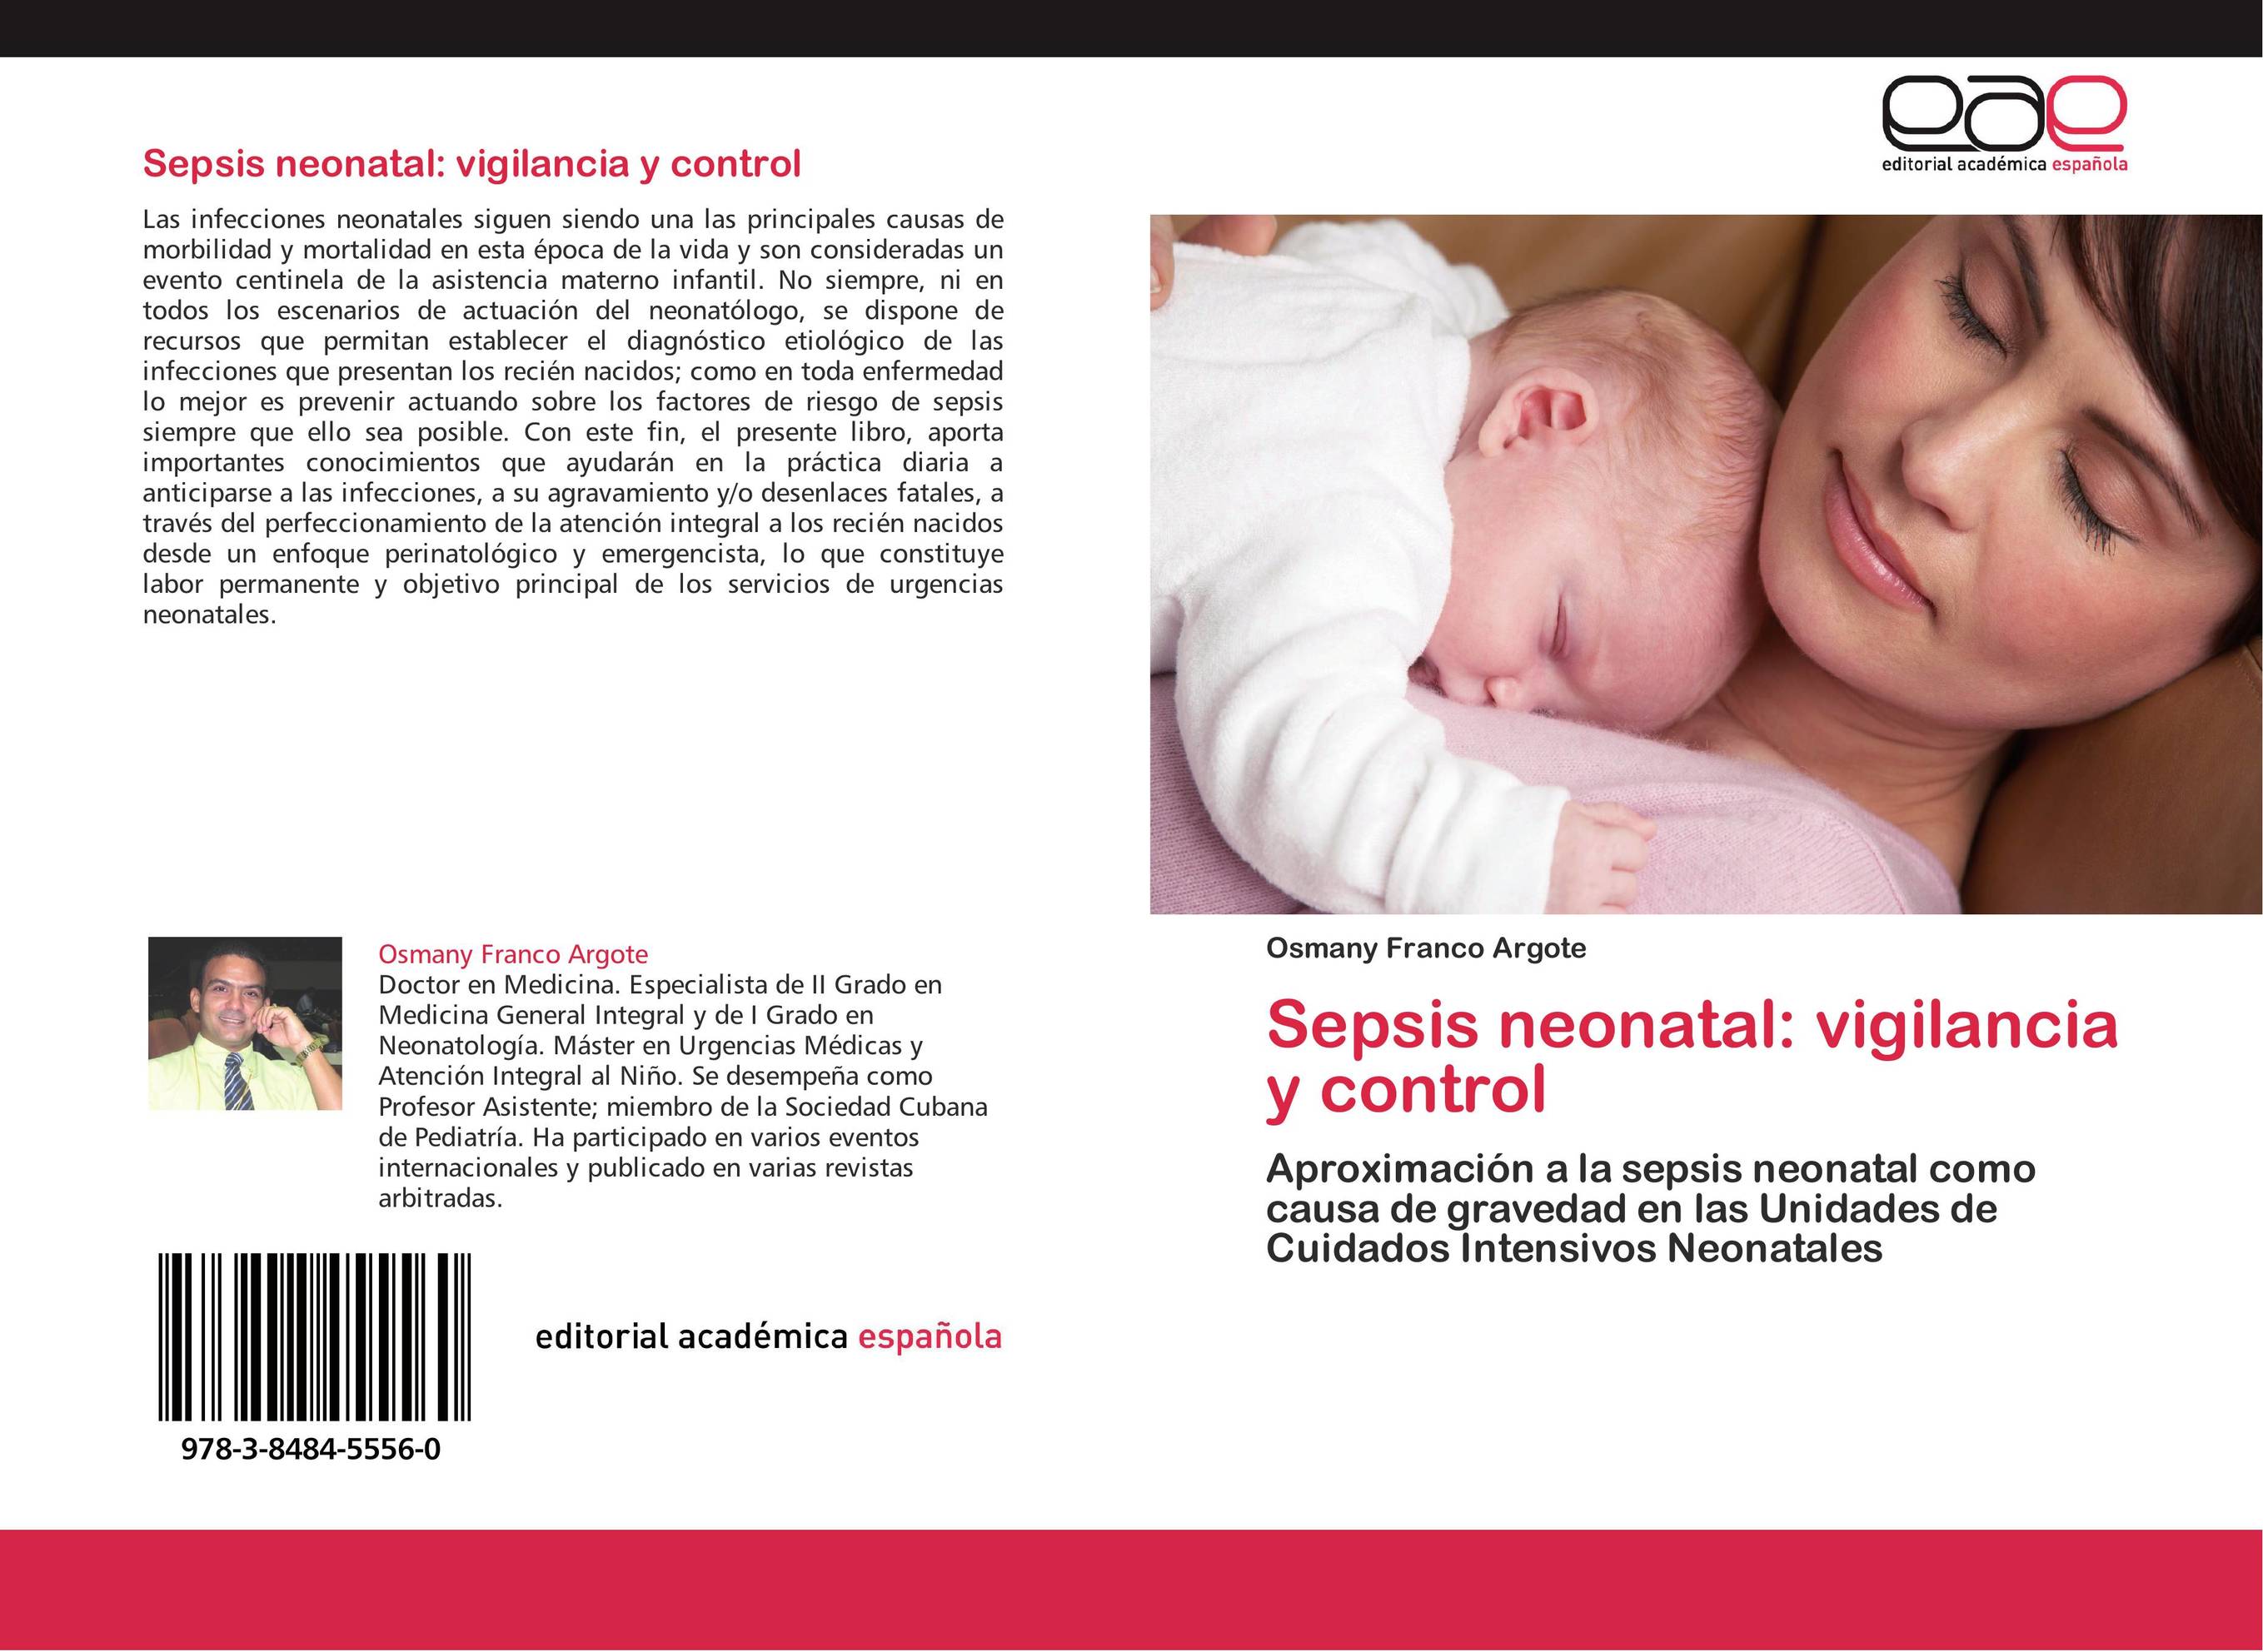 Sepsis neonatal: vigilancia y control